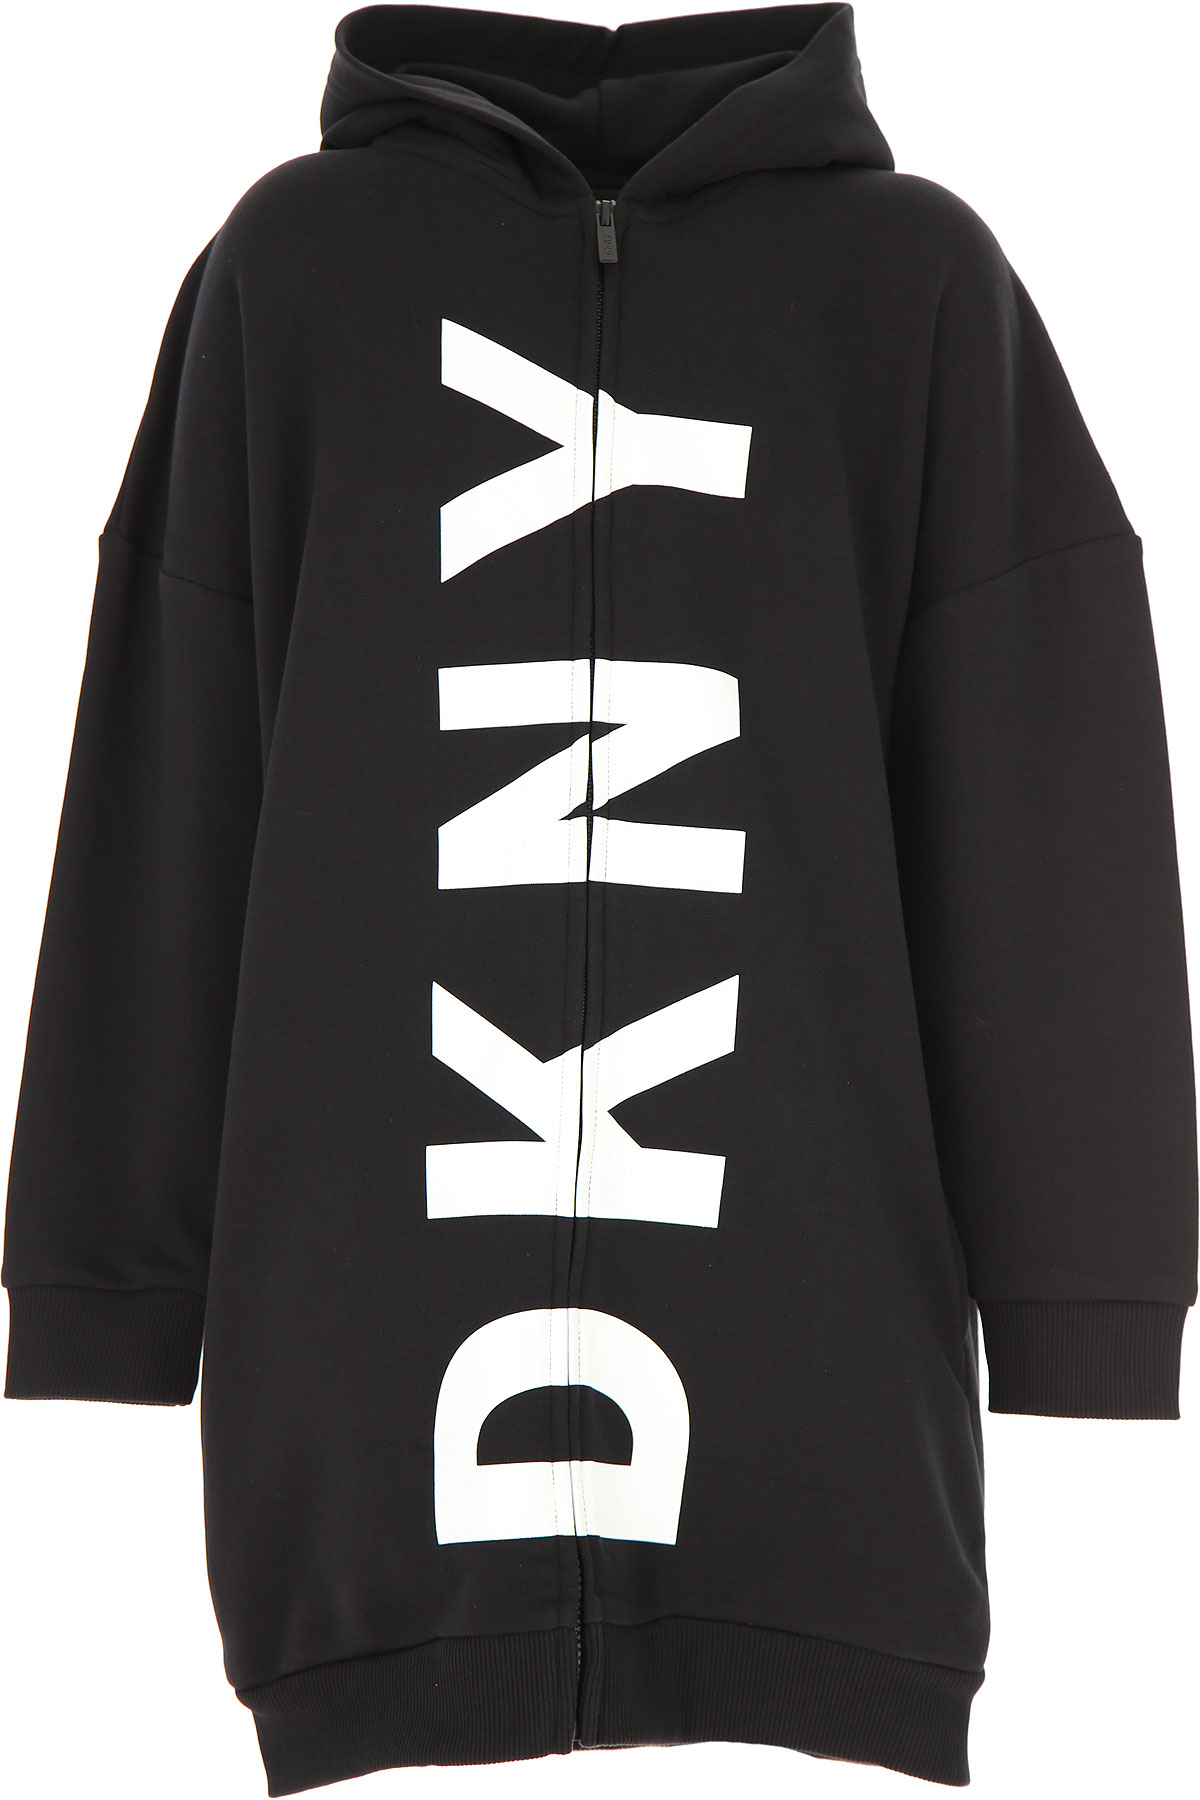 DKNY Kinder Sweatshirt & Kapuzenpullover für Mädchen Günstig im Sale, Schwarz, Baumwolle, 2017, 10Y 14Y 16Y 8Y